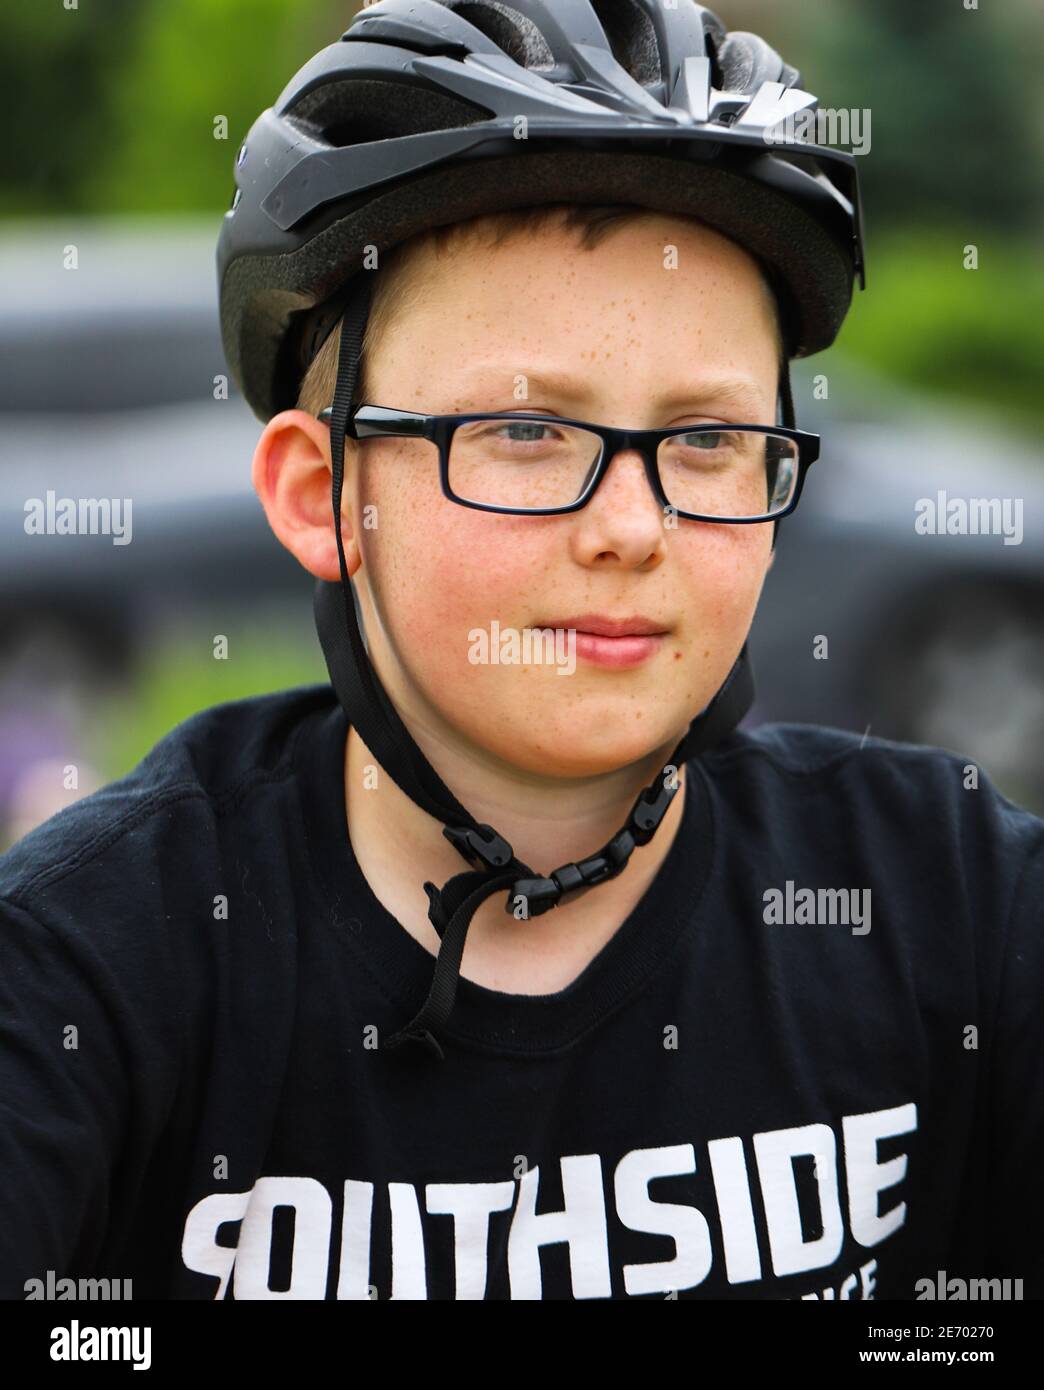 Giovane bel ragazzo presenato skinned giusto che indossa una bici nera casco e occhiali scuri che si sentono sicuri per l'inizio di la gara Foto Stock